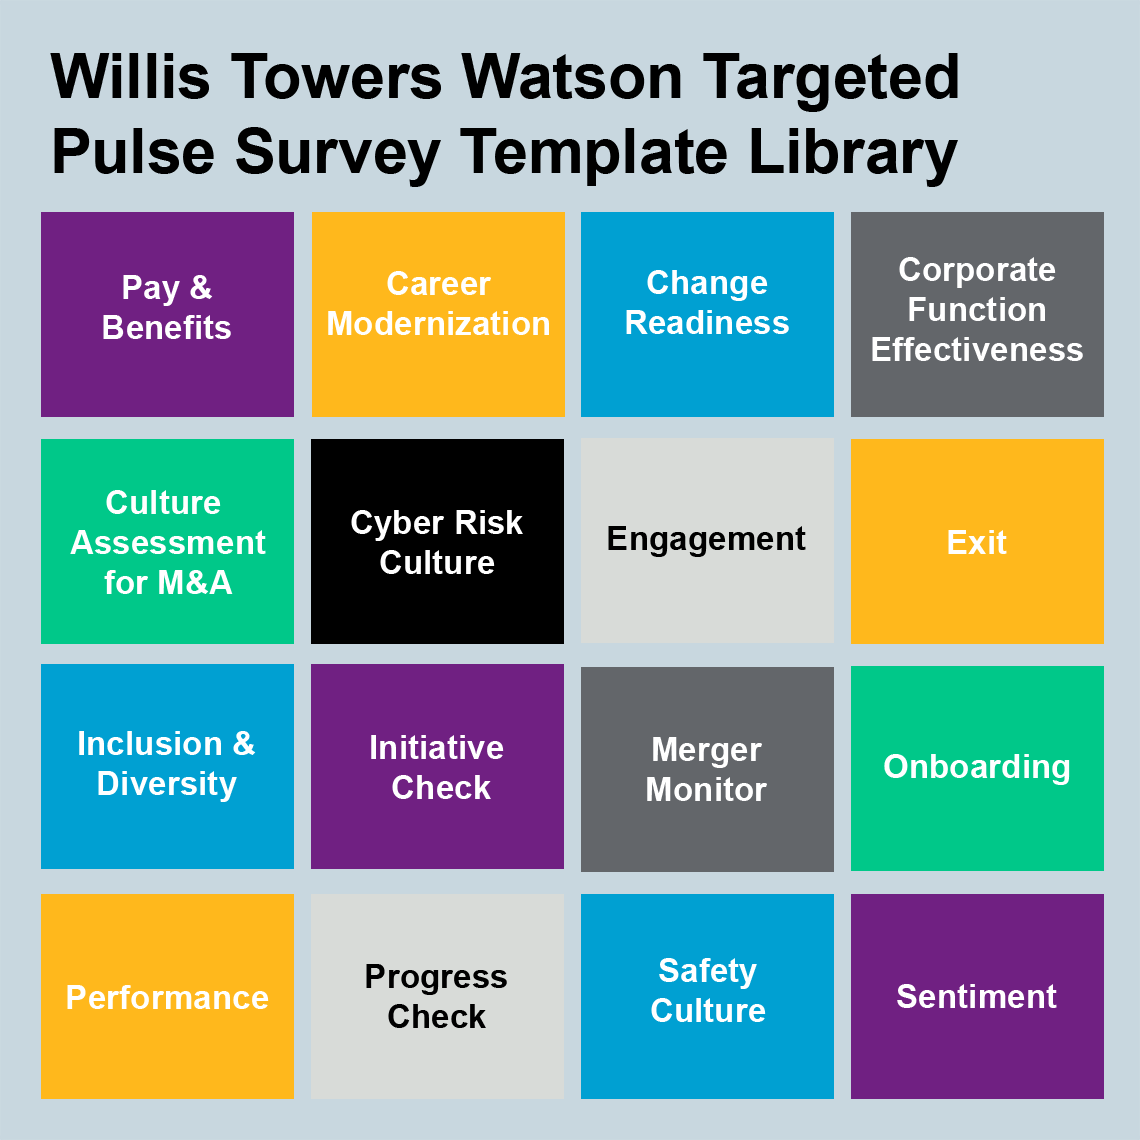 Modelo della libreria della Targeted Pulse Survey di Willis Towers Watson